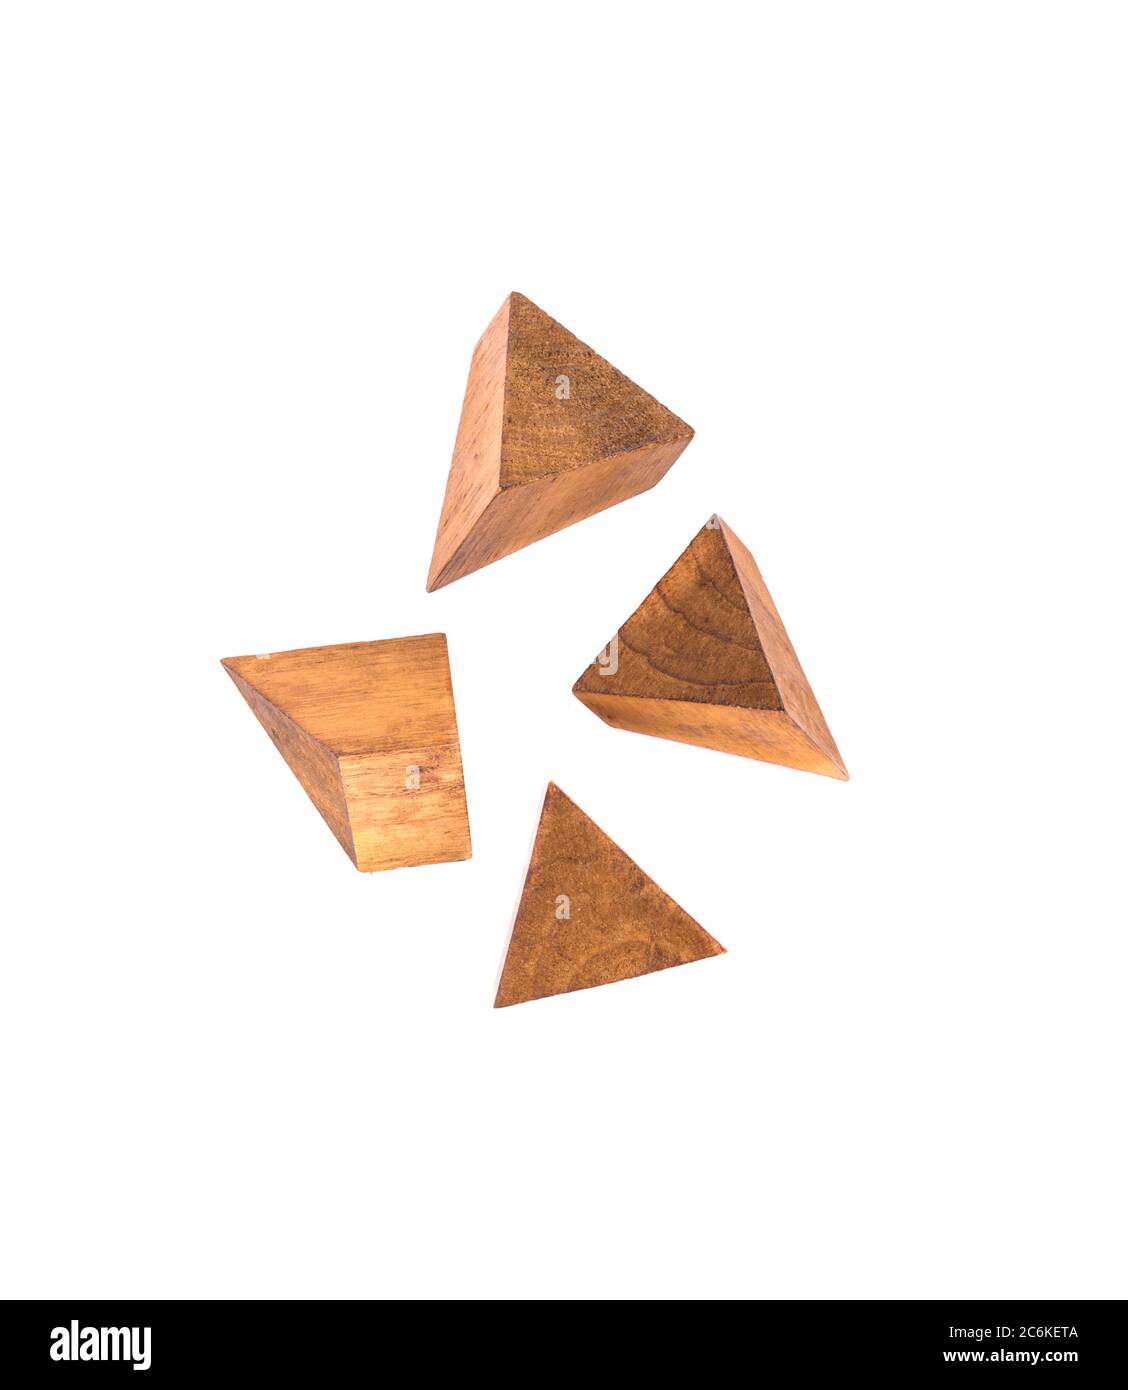 piramidal fotografías de alta resolución - Alamy